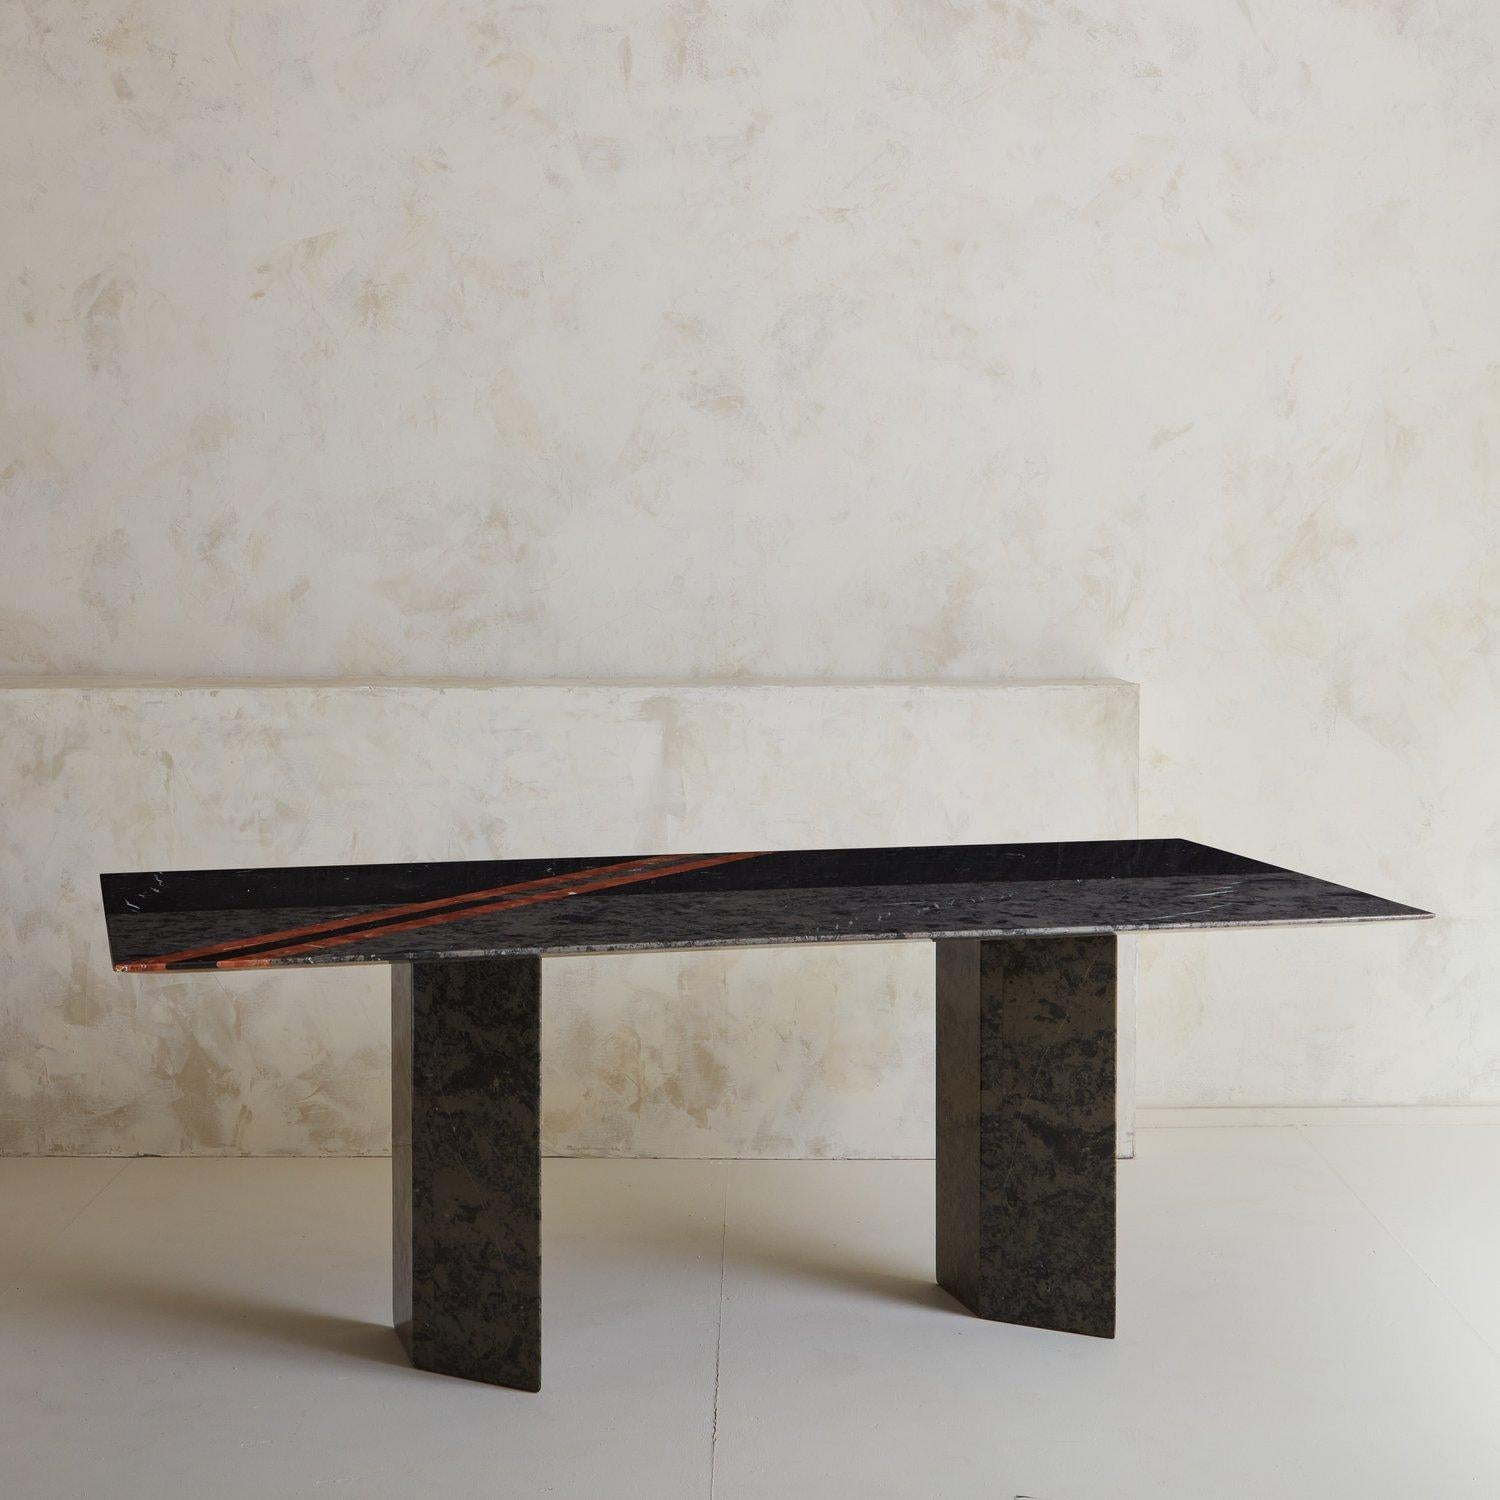 Ein postmoderner Roche-Bobois-Marmor-Esstisch aus den 1980er Jahren, der aus den Marmorsorten Grigio Marquina und Rosso Albania besteht und ein schönes lineares Design aufweist. Die Tischplatte hat eine elegante, abgeschrägte Kante in Haifischform,